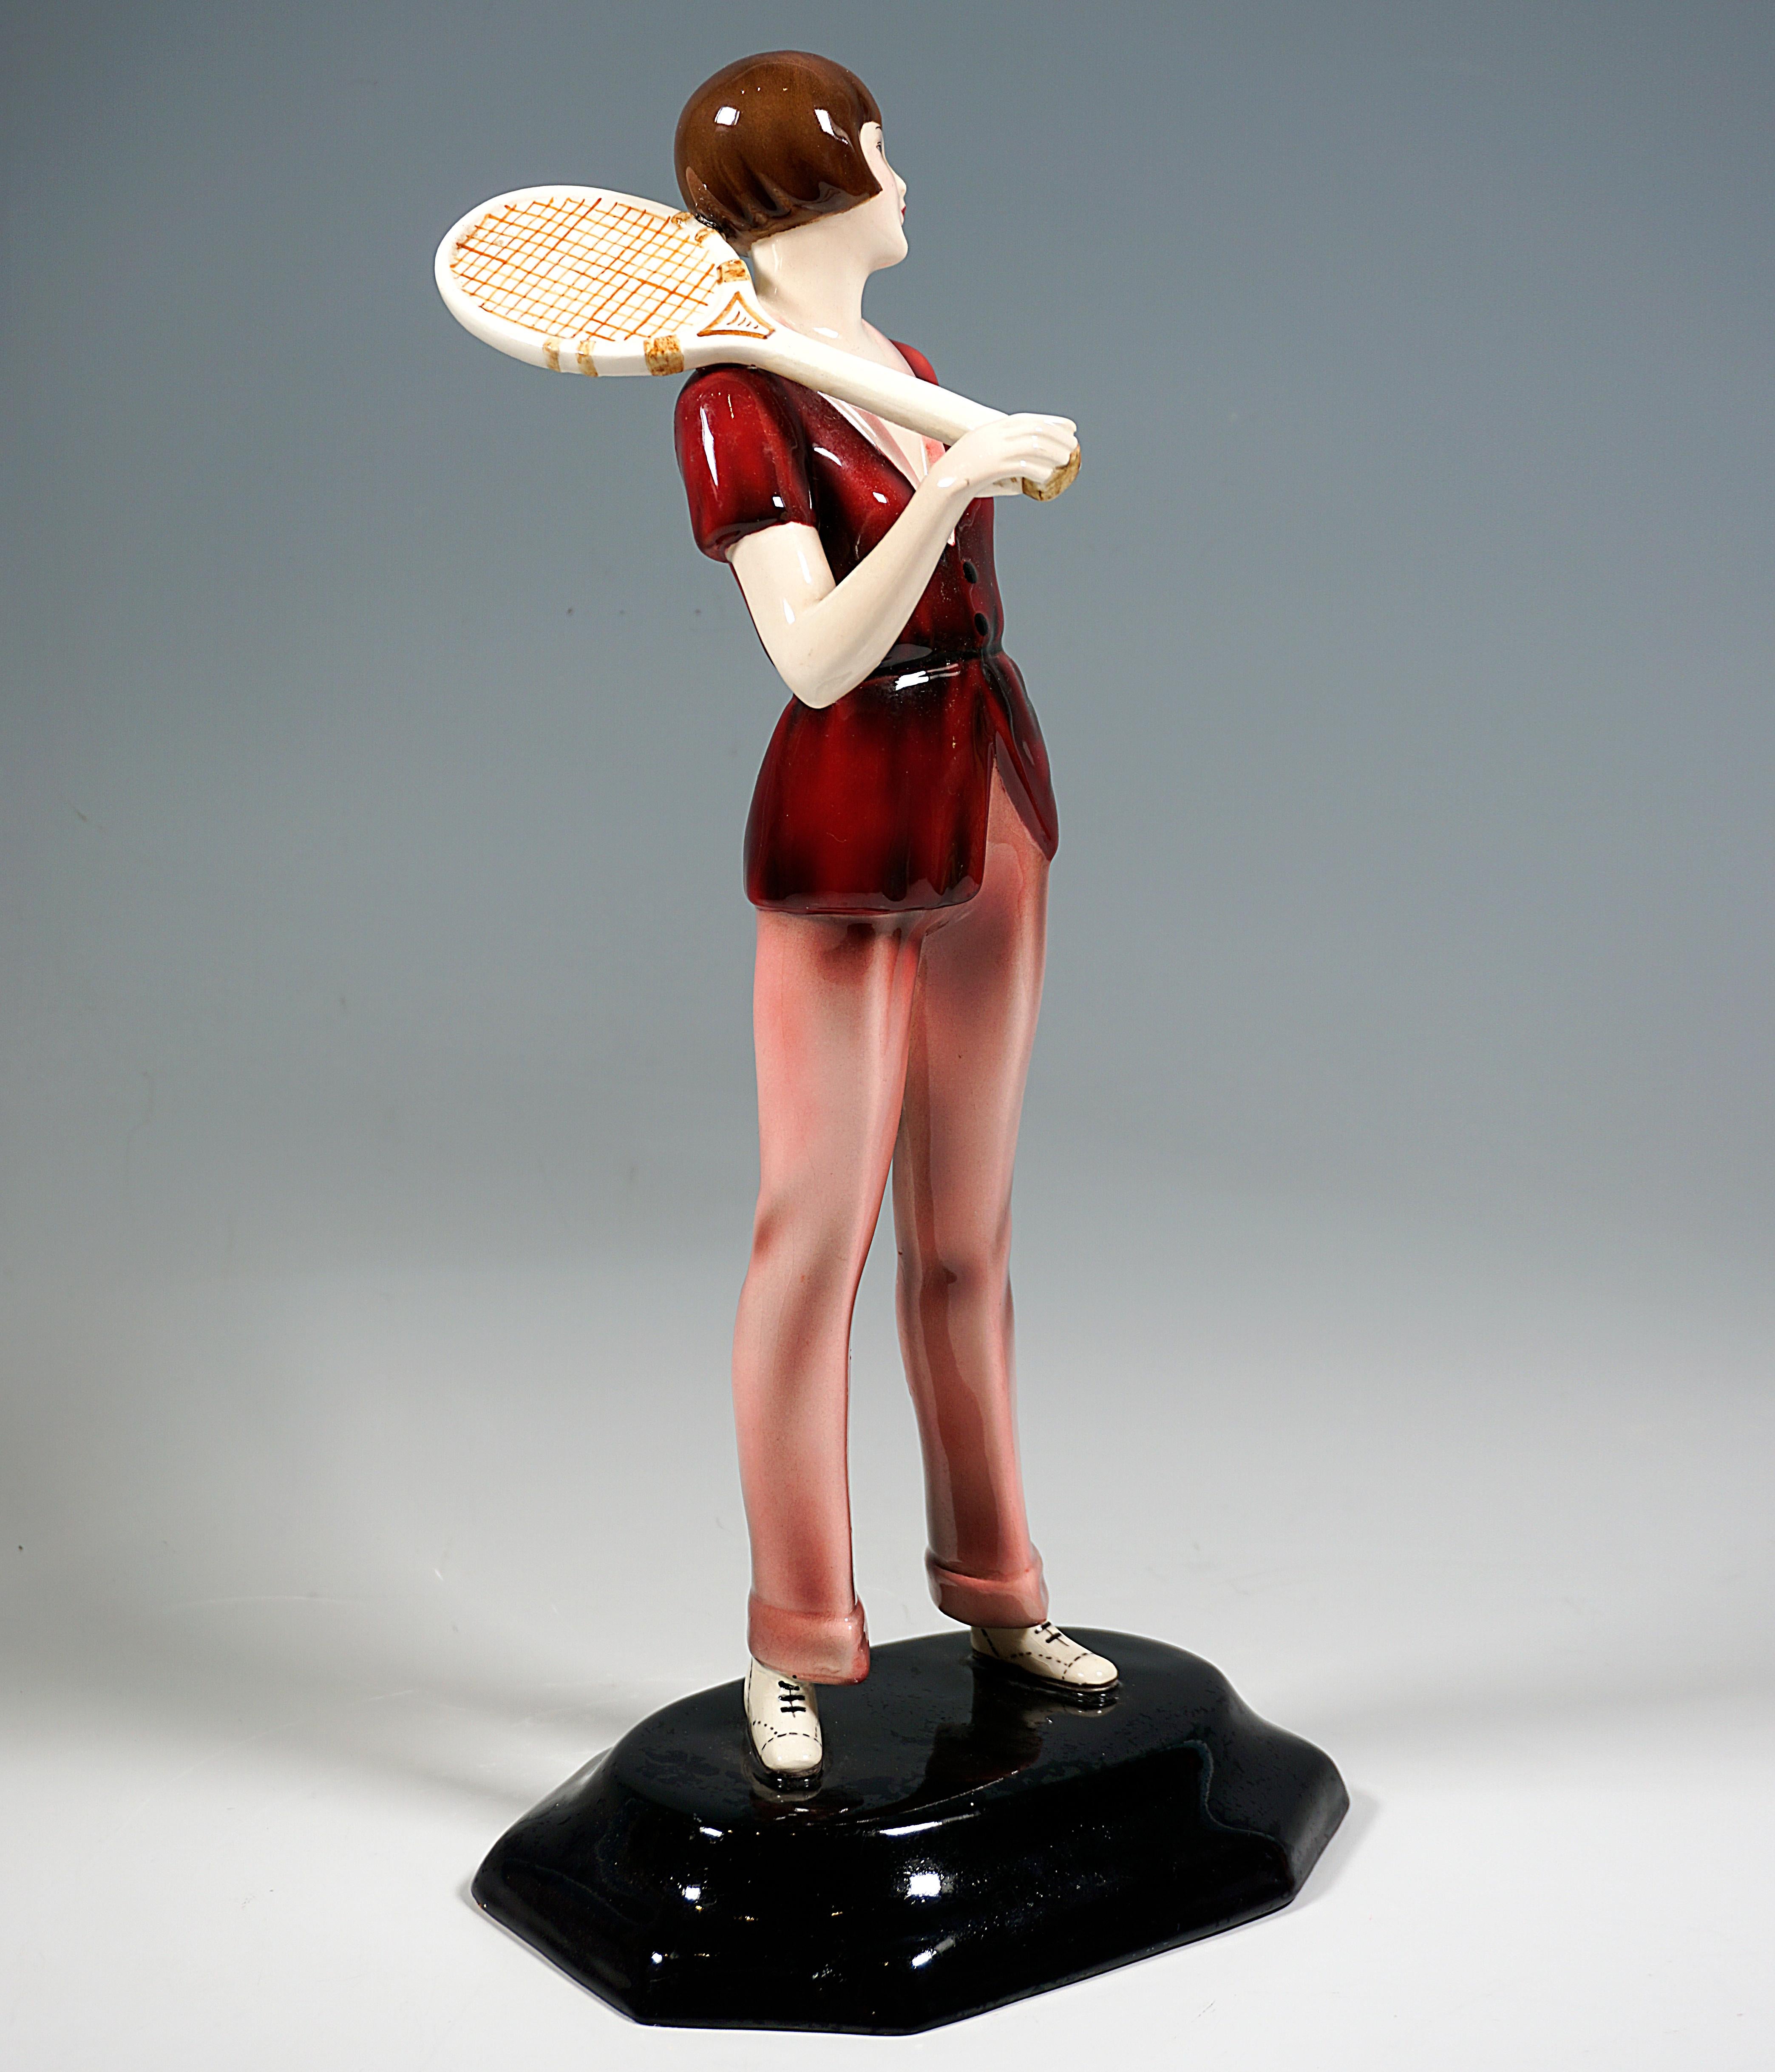 Très rare figure d'art en céramique Goldscheider datant d'environ 1930 :
Jeune femme debout, cheveux bruns coupés au carré, en tenue de sport élégante : gilet confortable à manches courtes avec une coupe basse sur le devant, pantalon long avec des